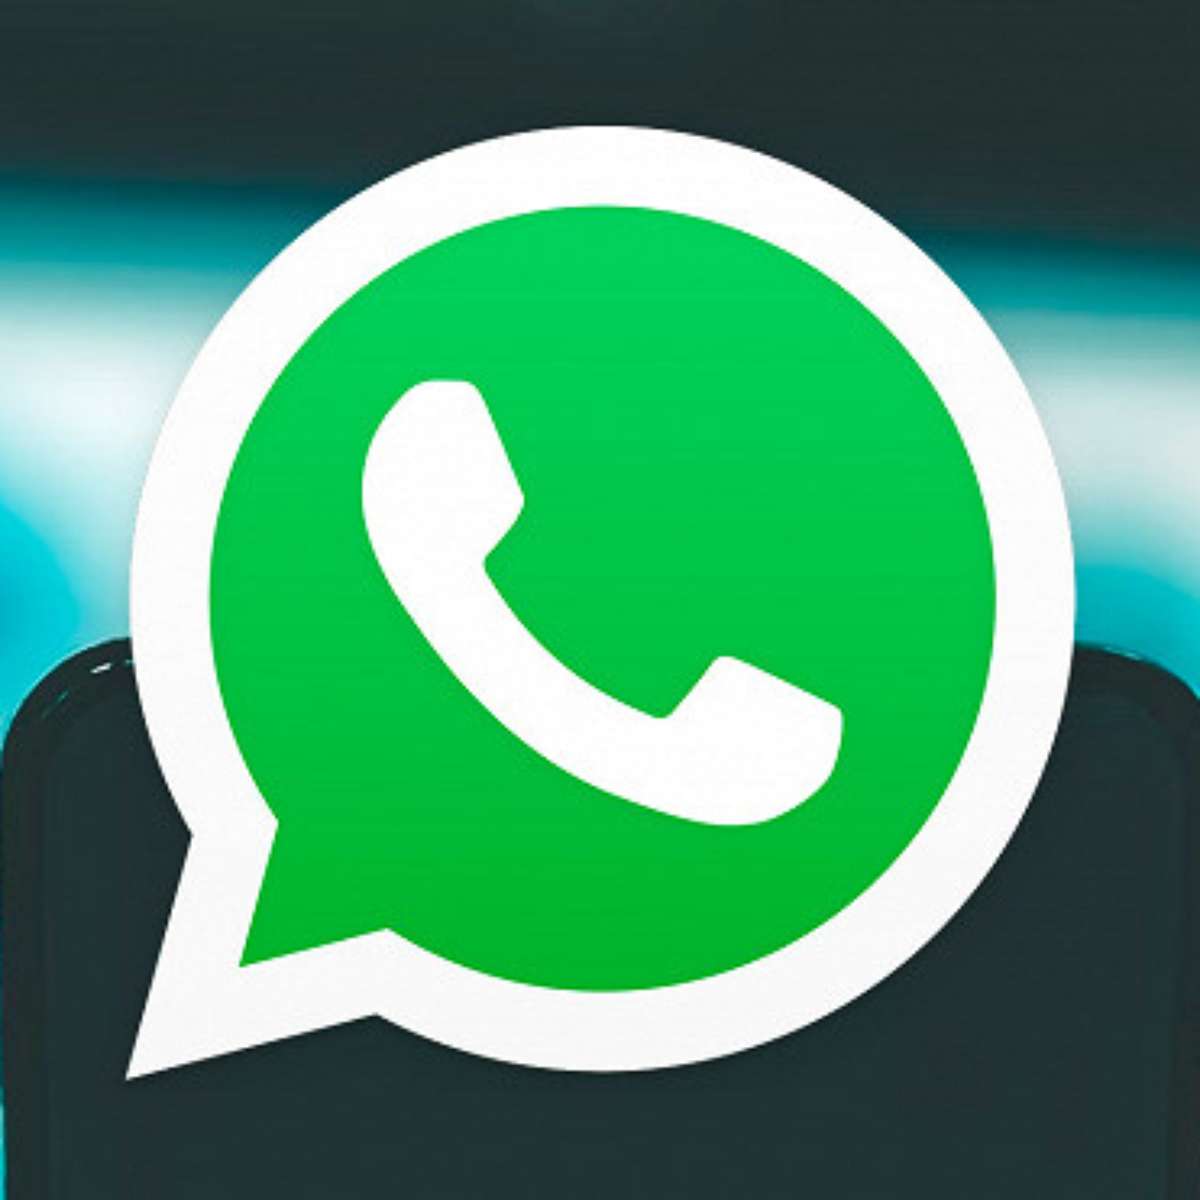 WhatsApp lança recurso 'Canais' igual ao do Telegram, com número ilimitado  de participantes, Tecnologia